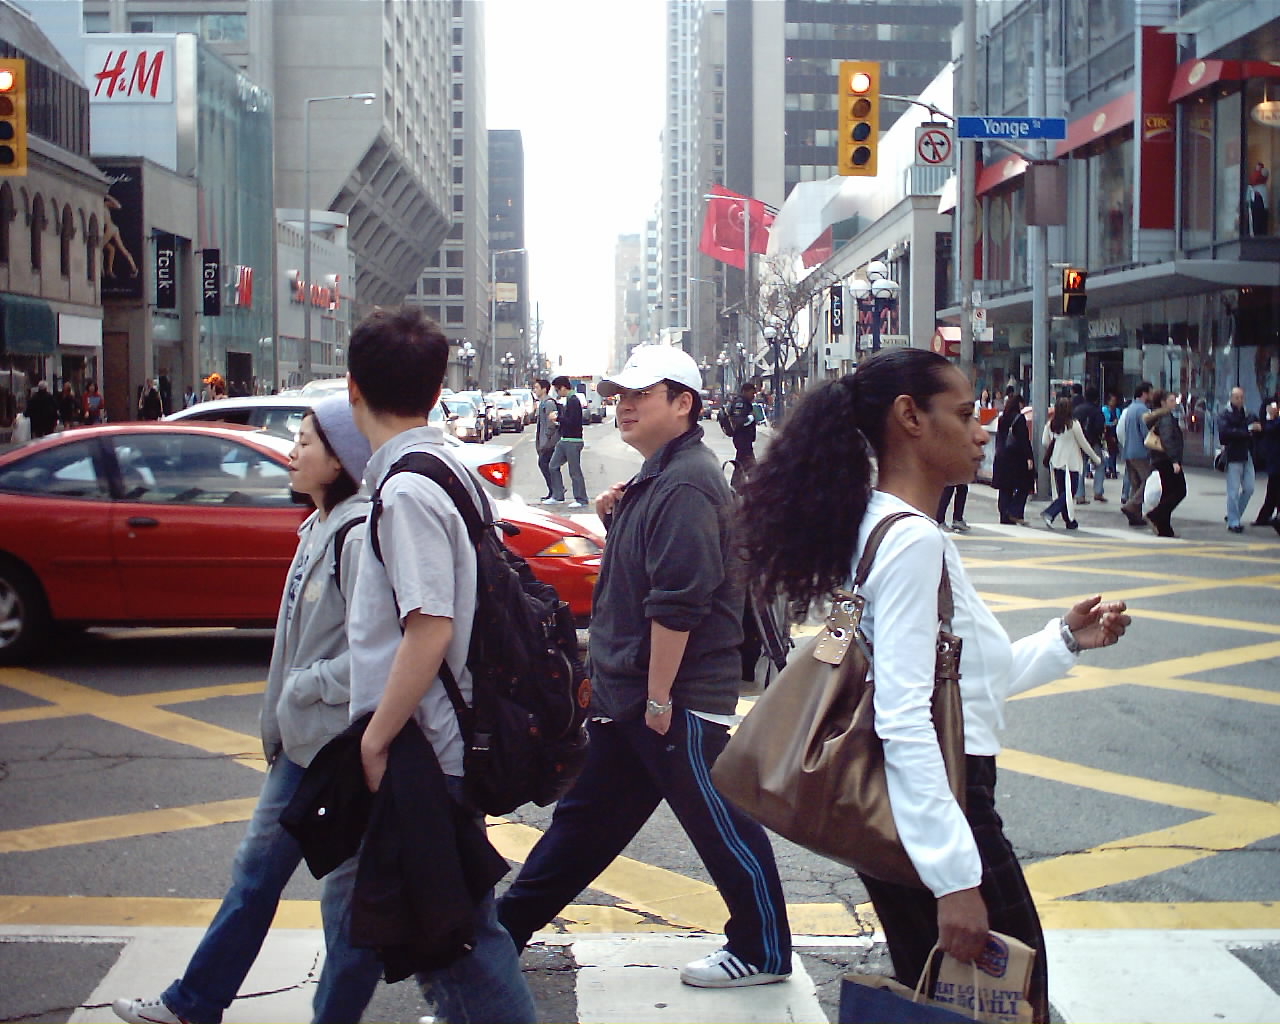 Photo of pedestrians at Bloor & Yonge